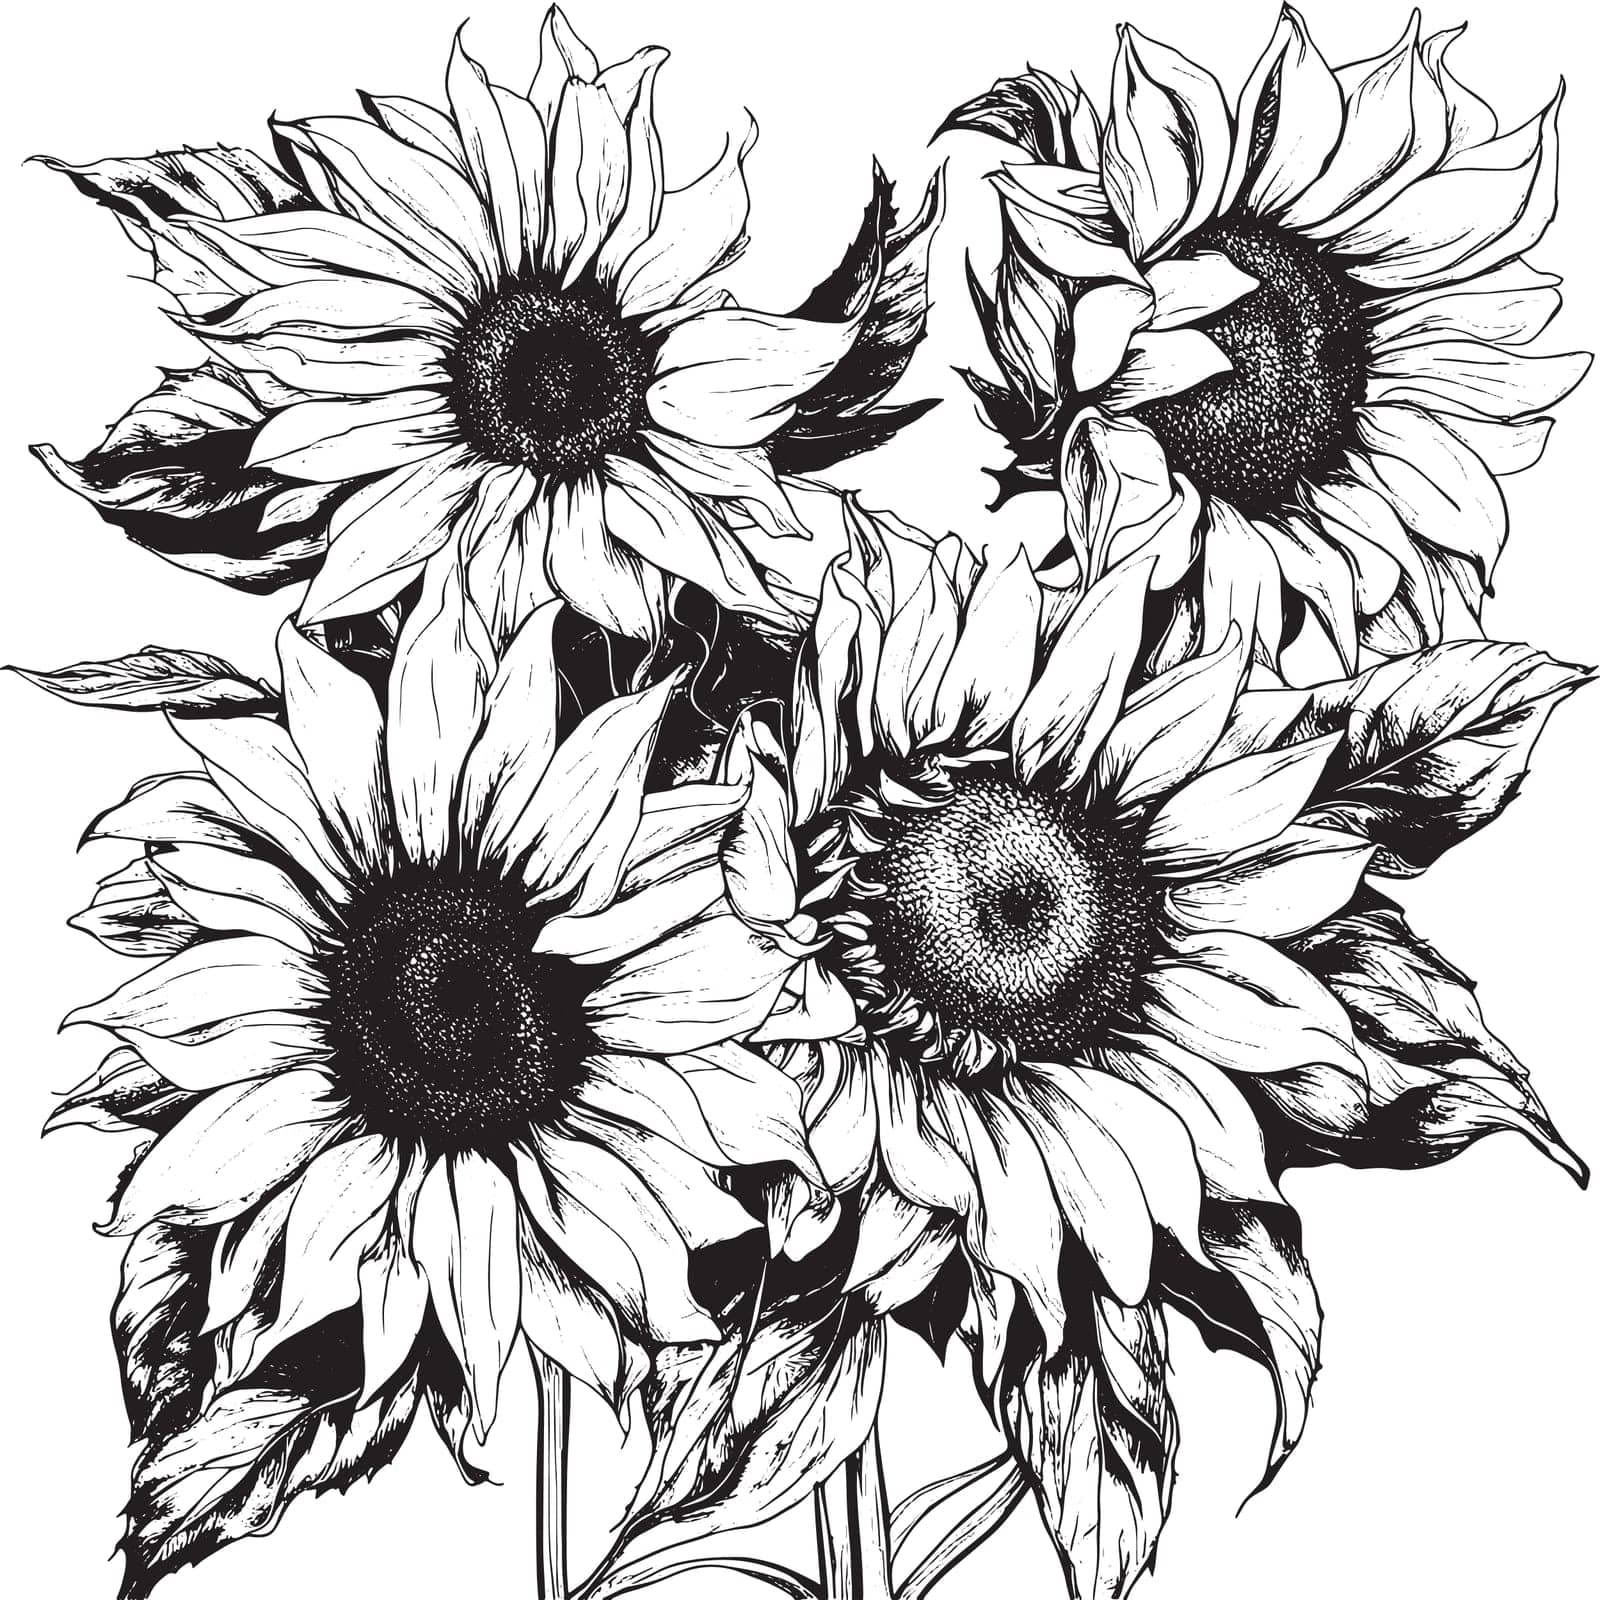 Sketch sunflower flower, botanical painting, floral design